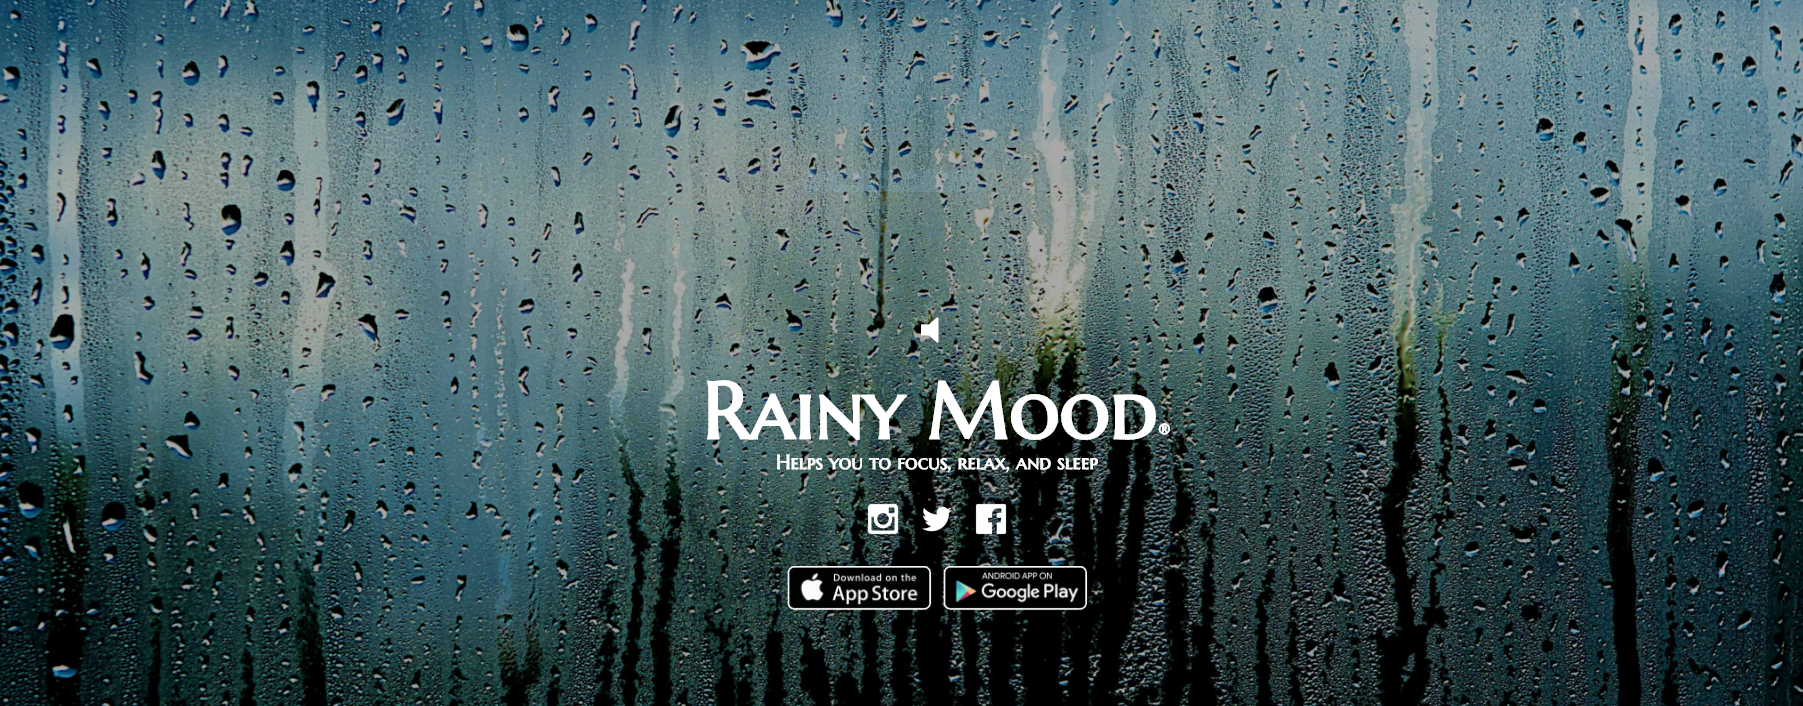 rainy mood app